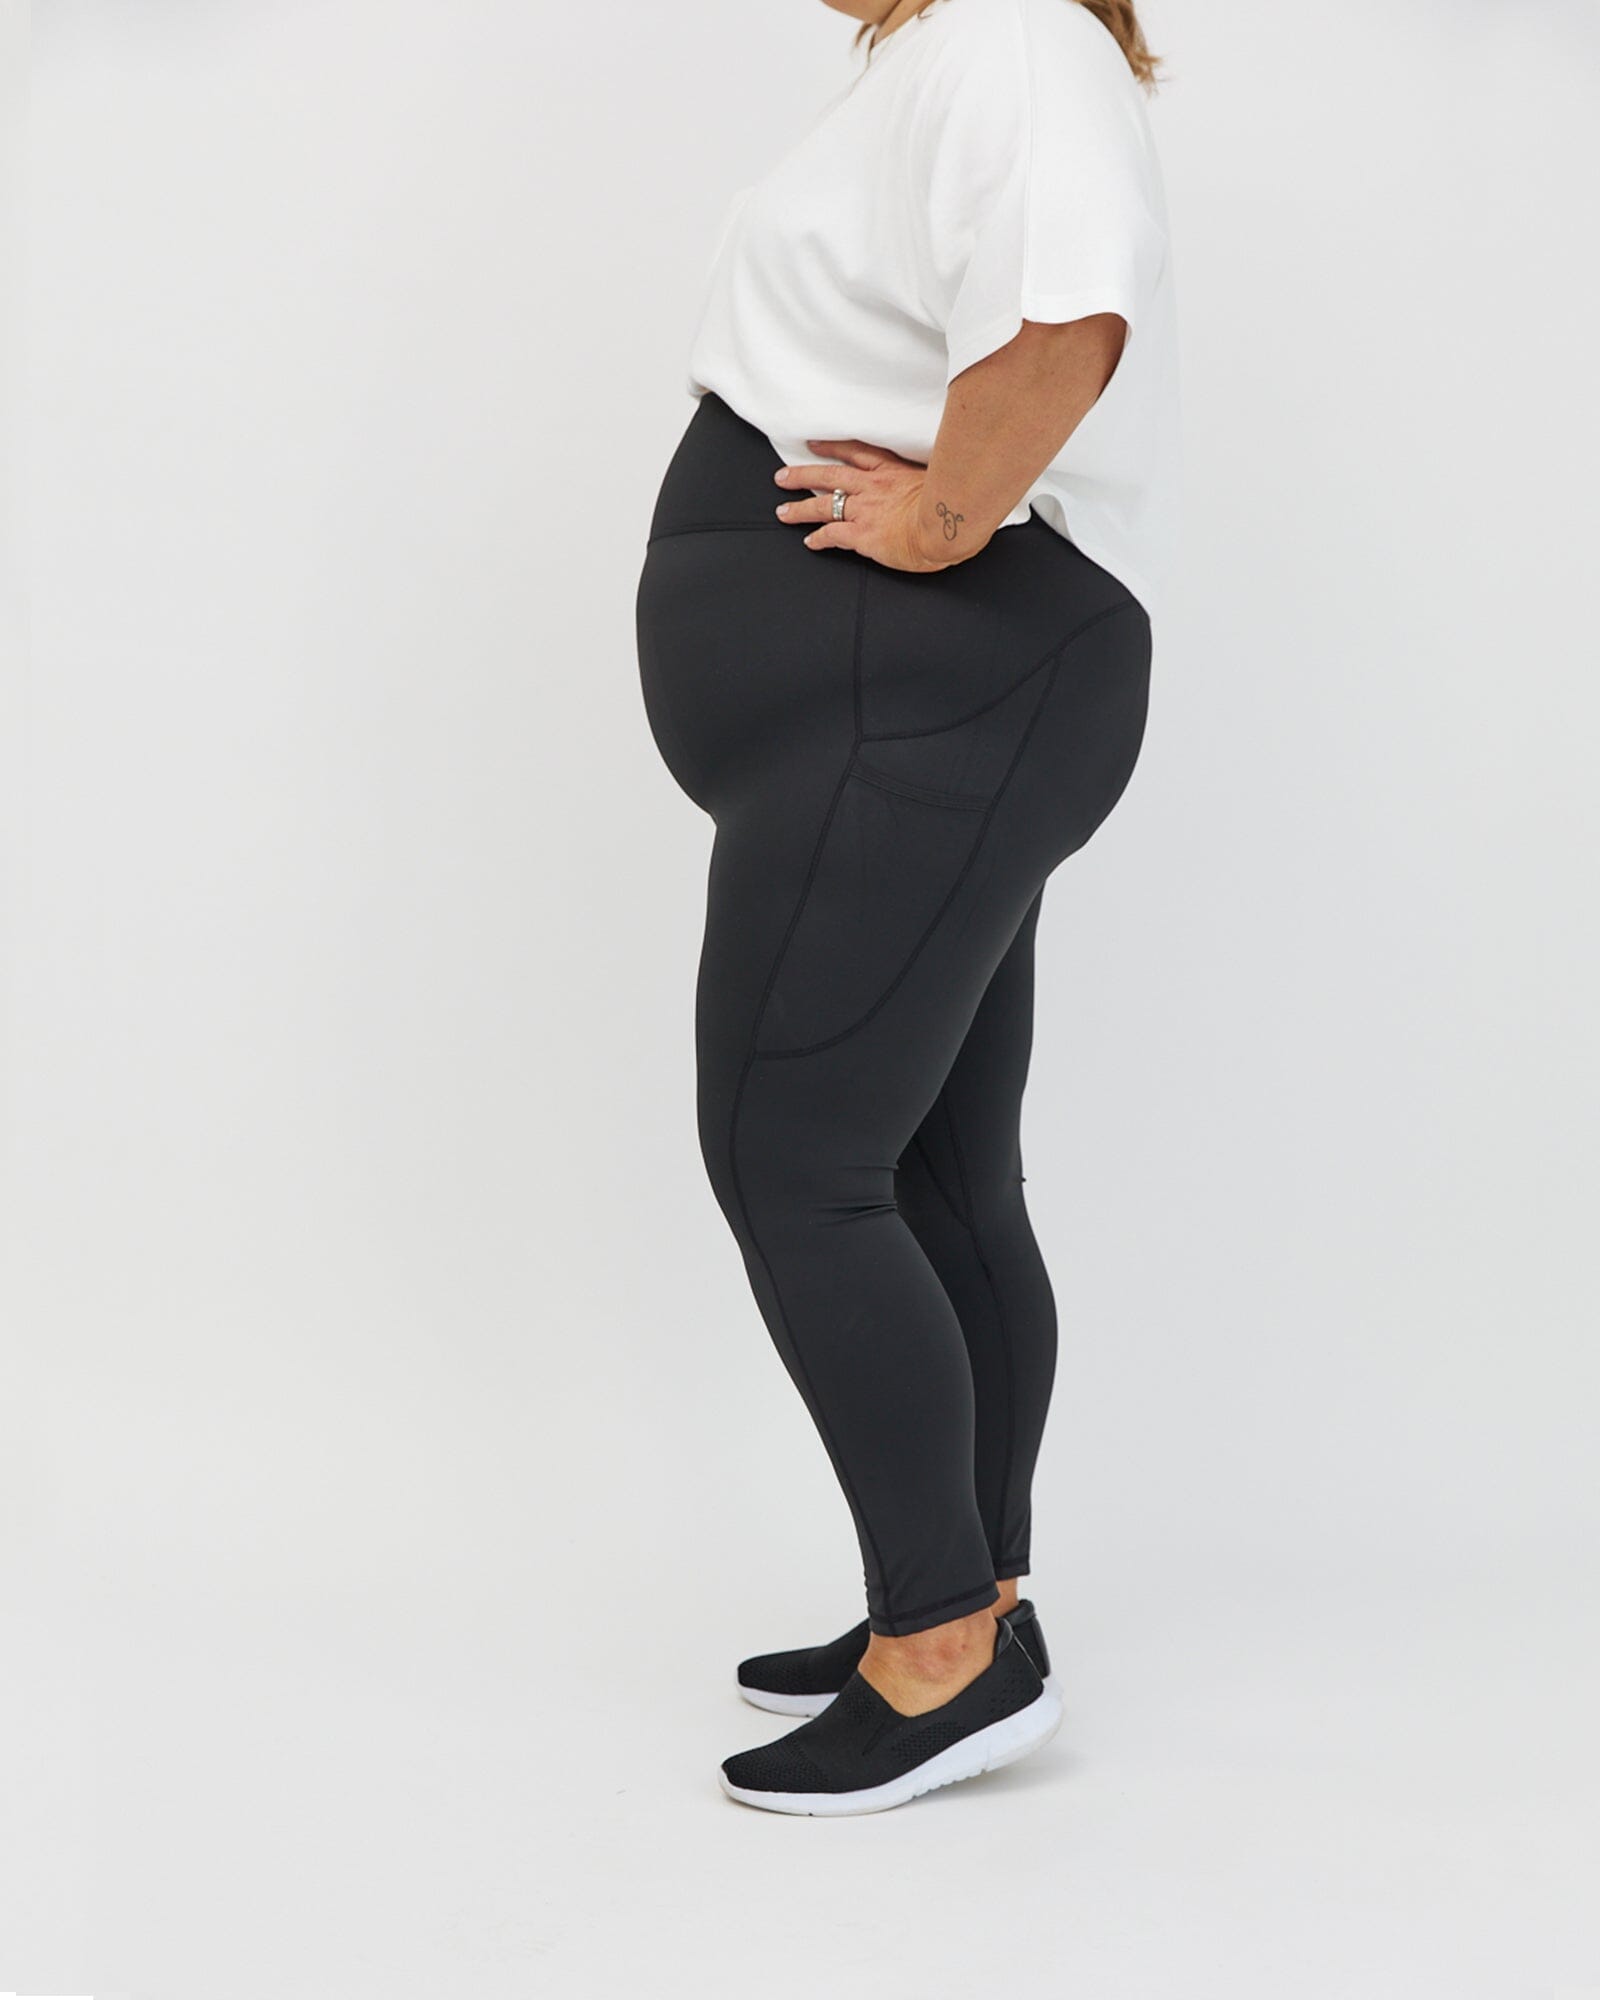 LIVI Active Black Active Pants Size 22 - 24 (Plus) - 52% off